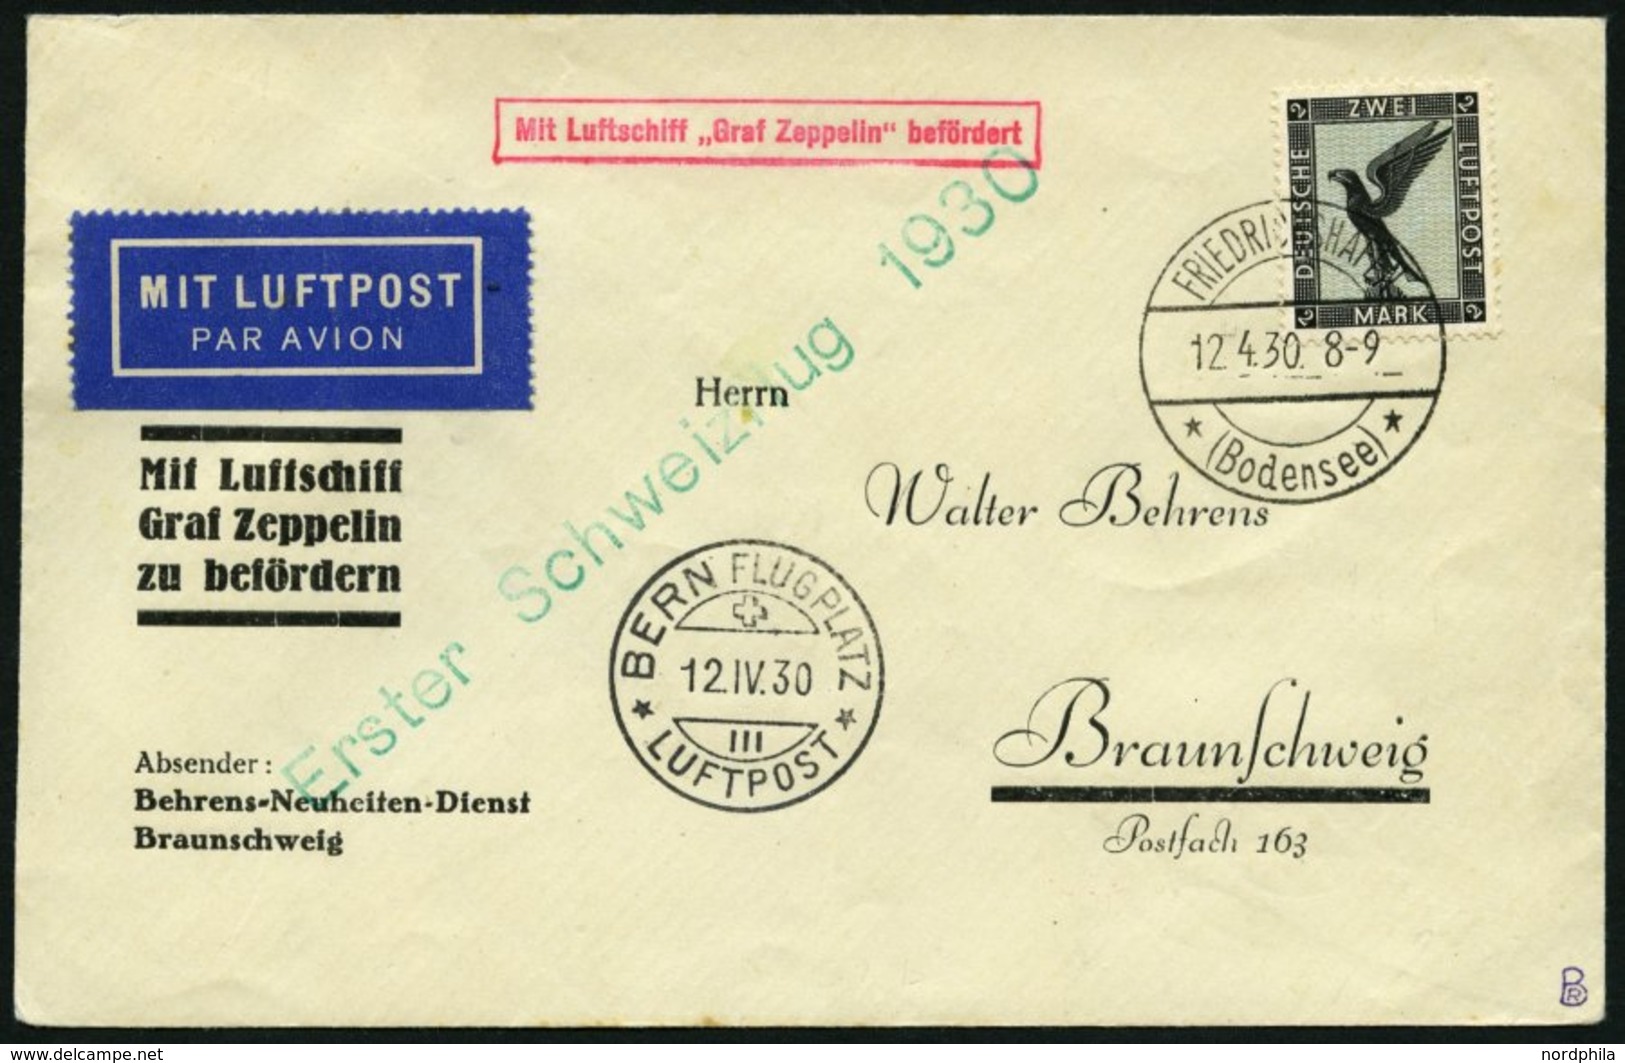 ZEPPELINPOST 51A BRIEF, 1930, Schweizfahrt, Fr`hafen-Bern, Mit Einzelfrankatur Mi.Nr. 383, Prachtbrief - Zeppelines